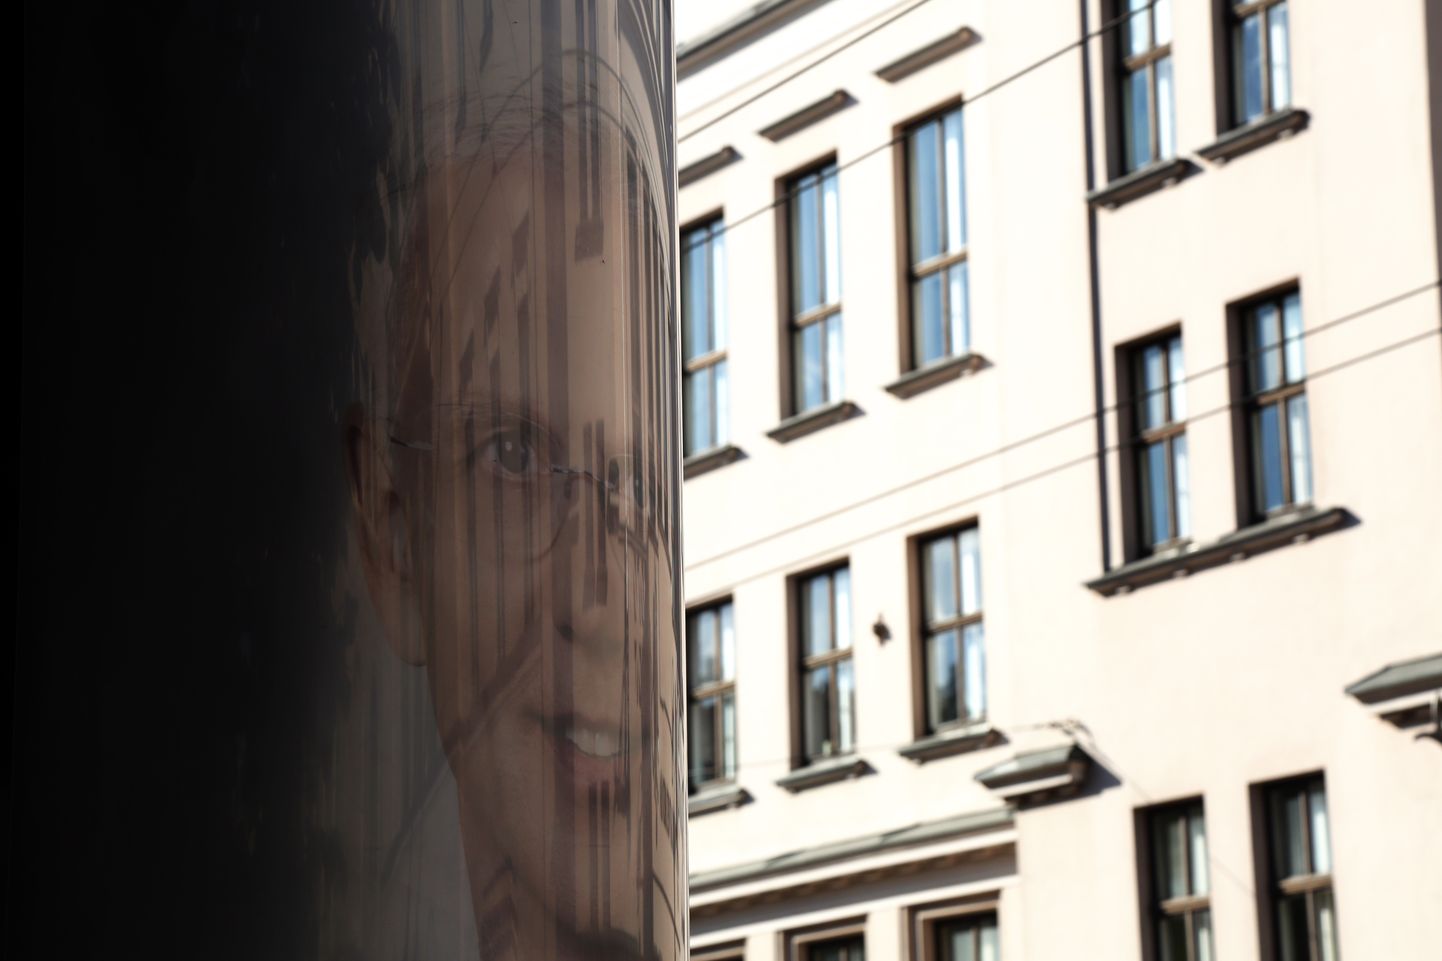 Partiju apvienības "Jaunā vienotība" reklāma Rīgas domes ārkārtas vēlēšanām.